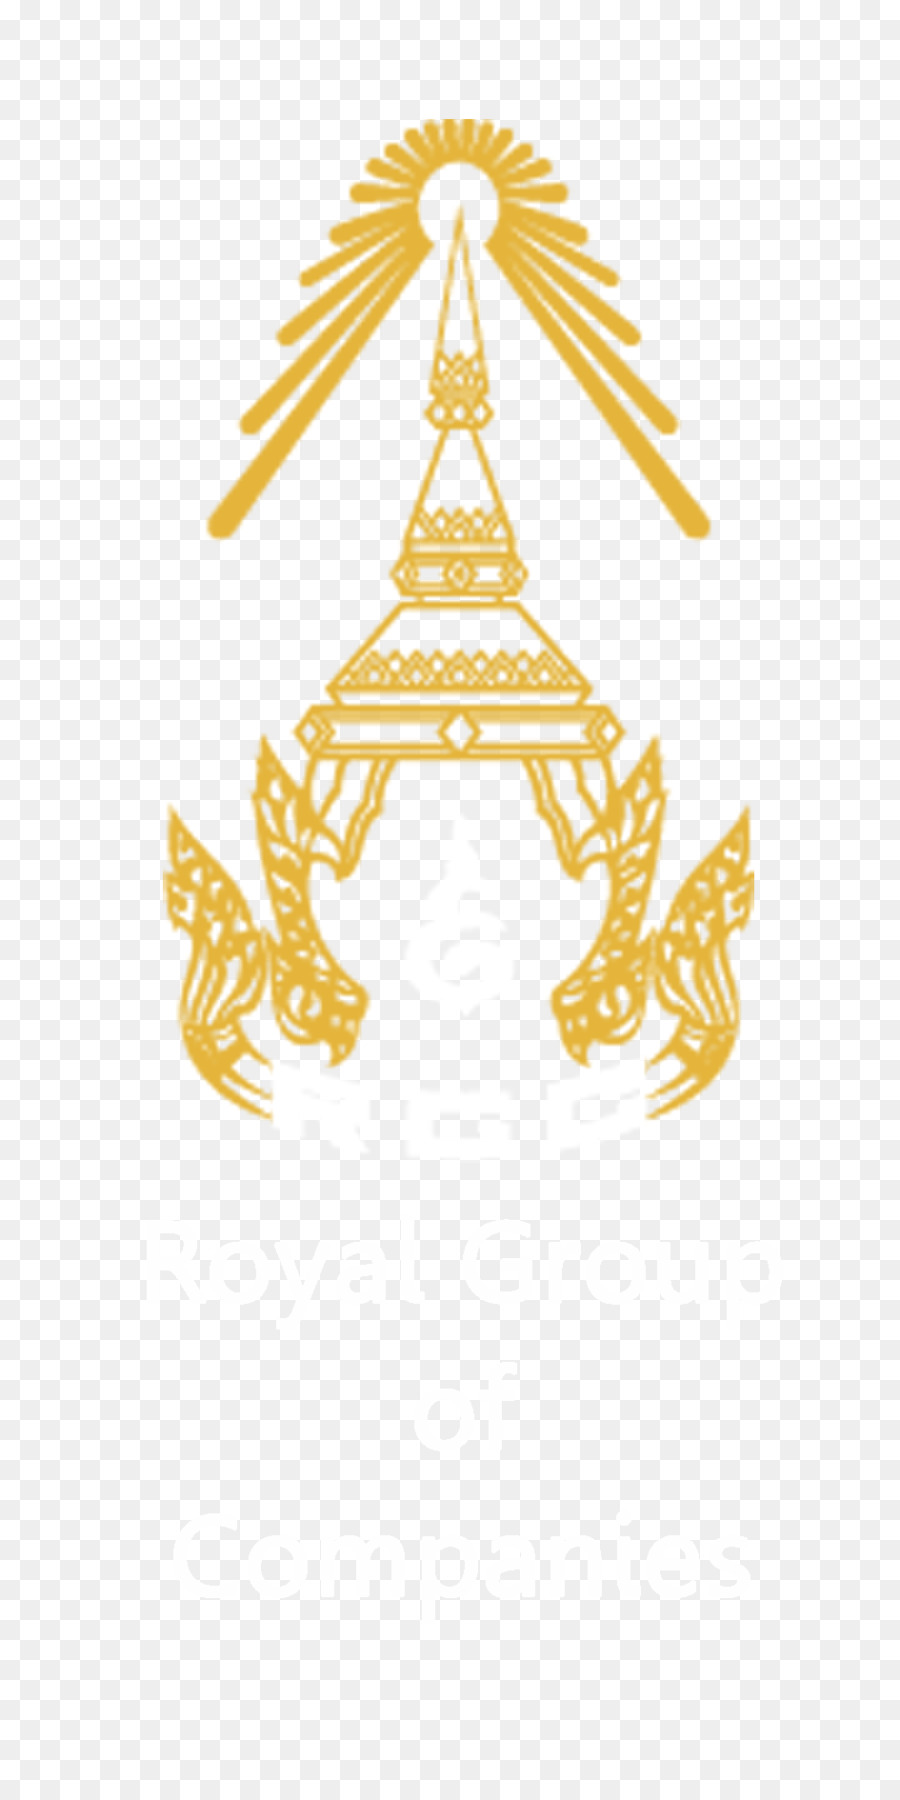 Cambogia Royal Group Azienda Logo Conglomerato - altri